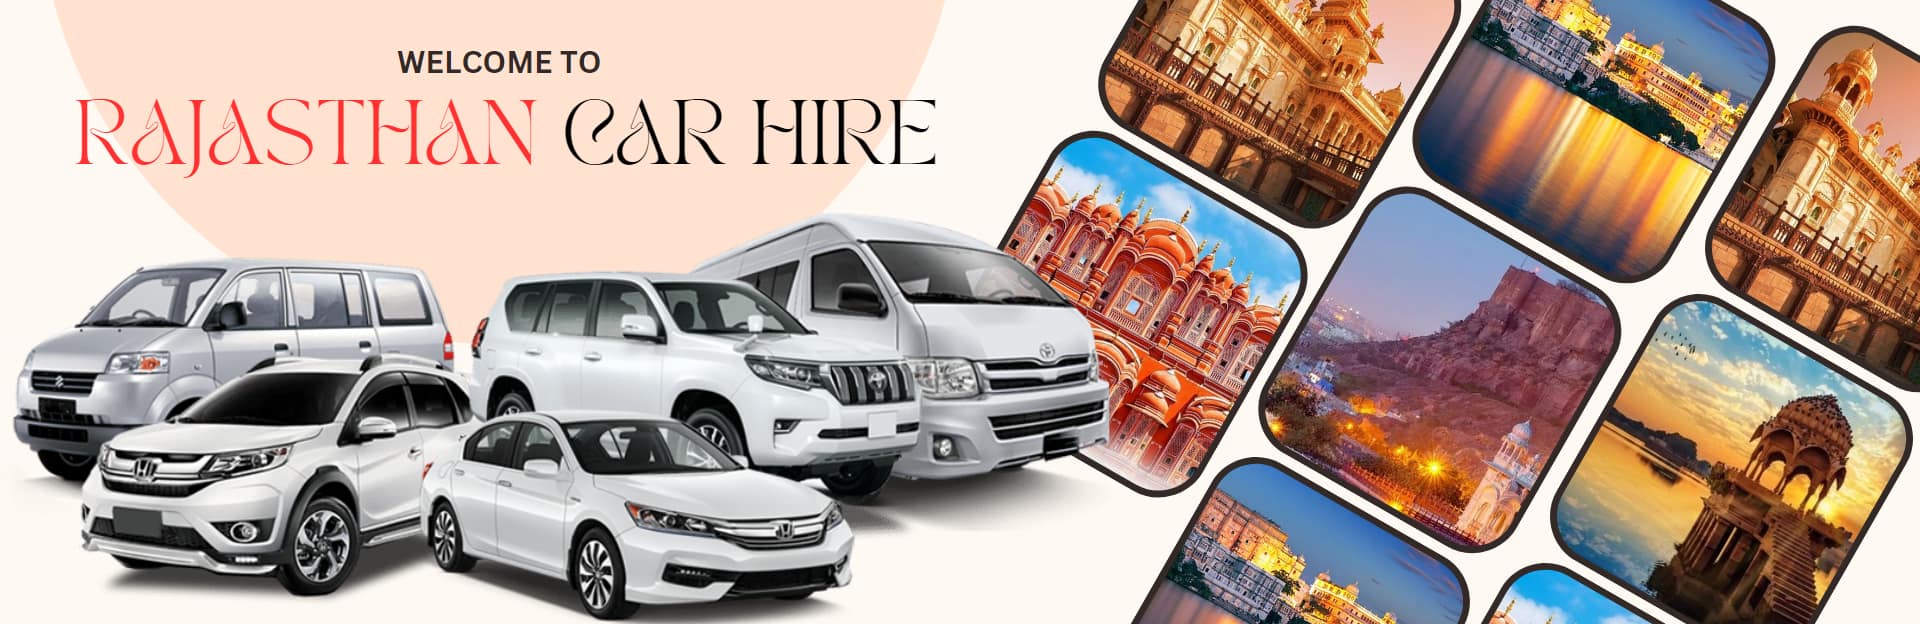 Car Rental Agency in Udaipur, Car Rental Udaipur, Car Hire Udaipur, Car Services Udaipur